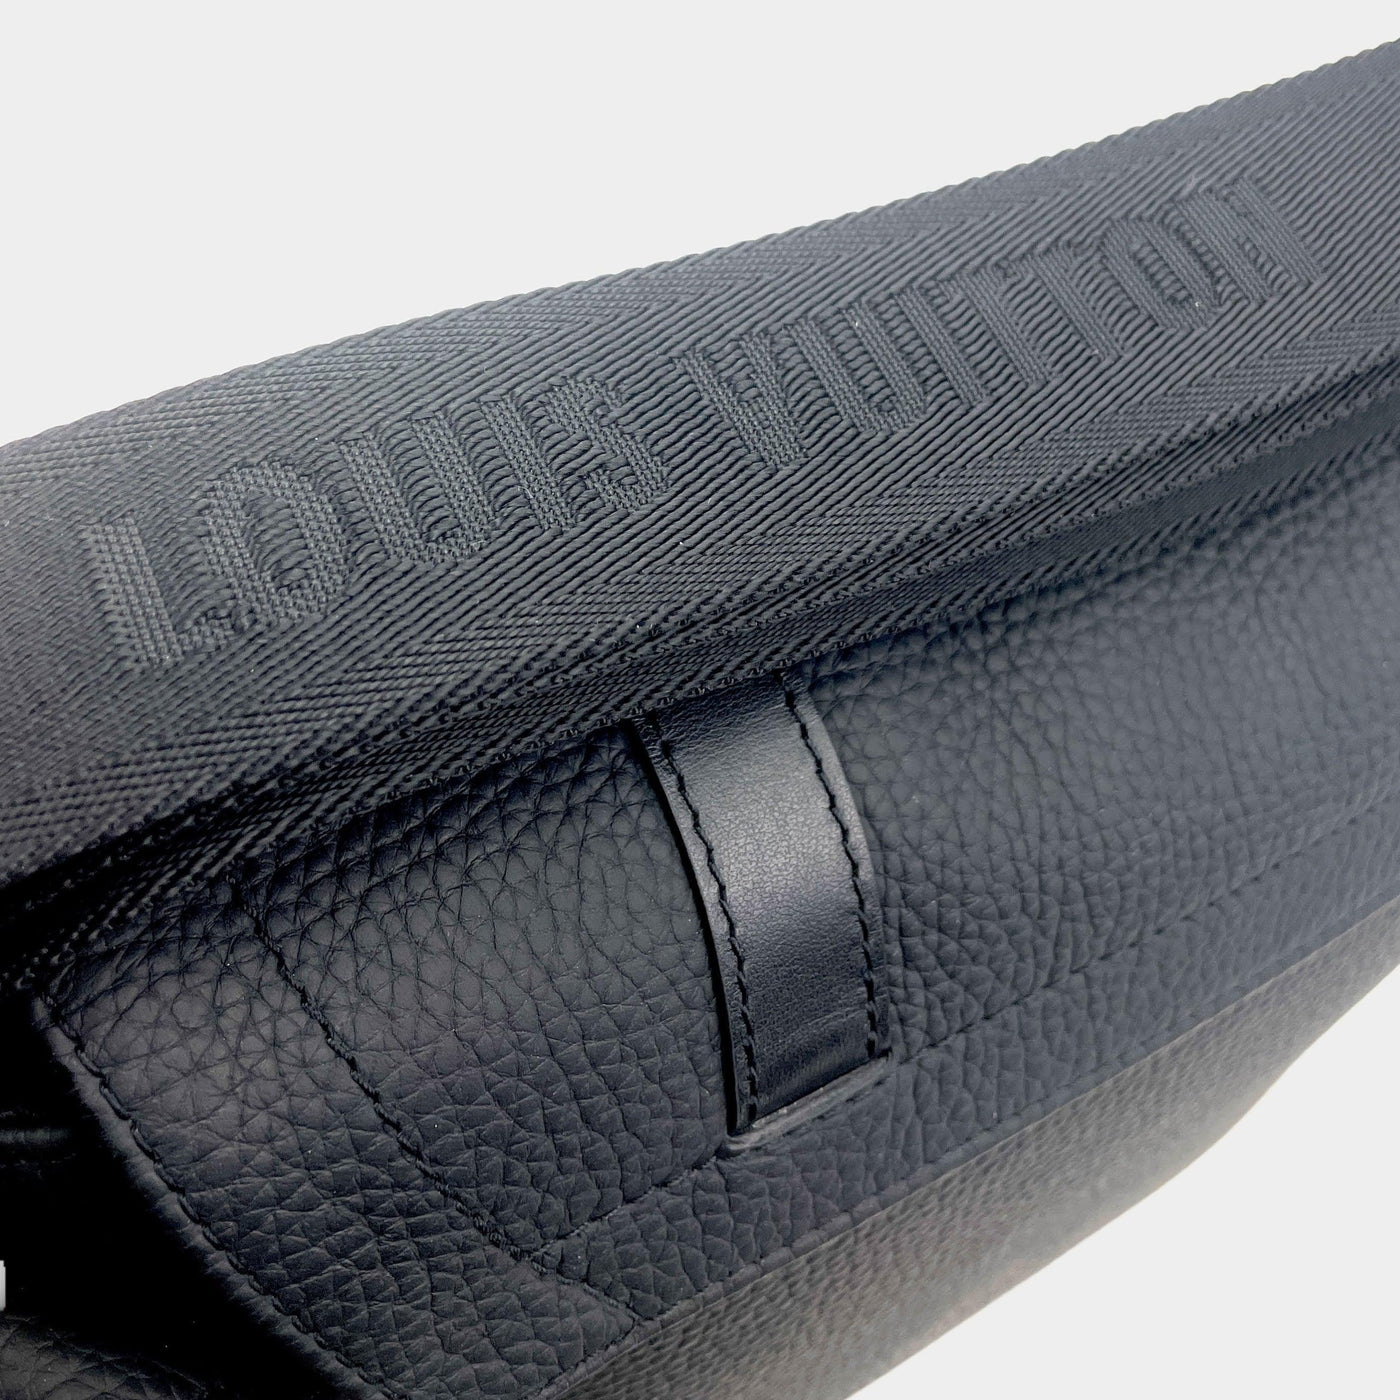 Louis Vuitton Alpha Messenger Bag Taurillon Leather - ShopStyle